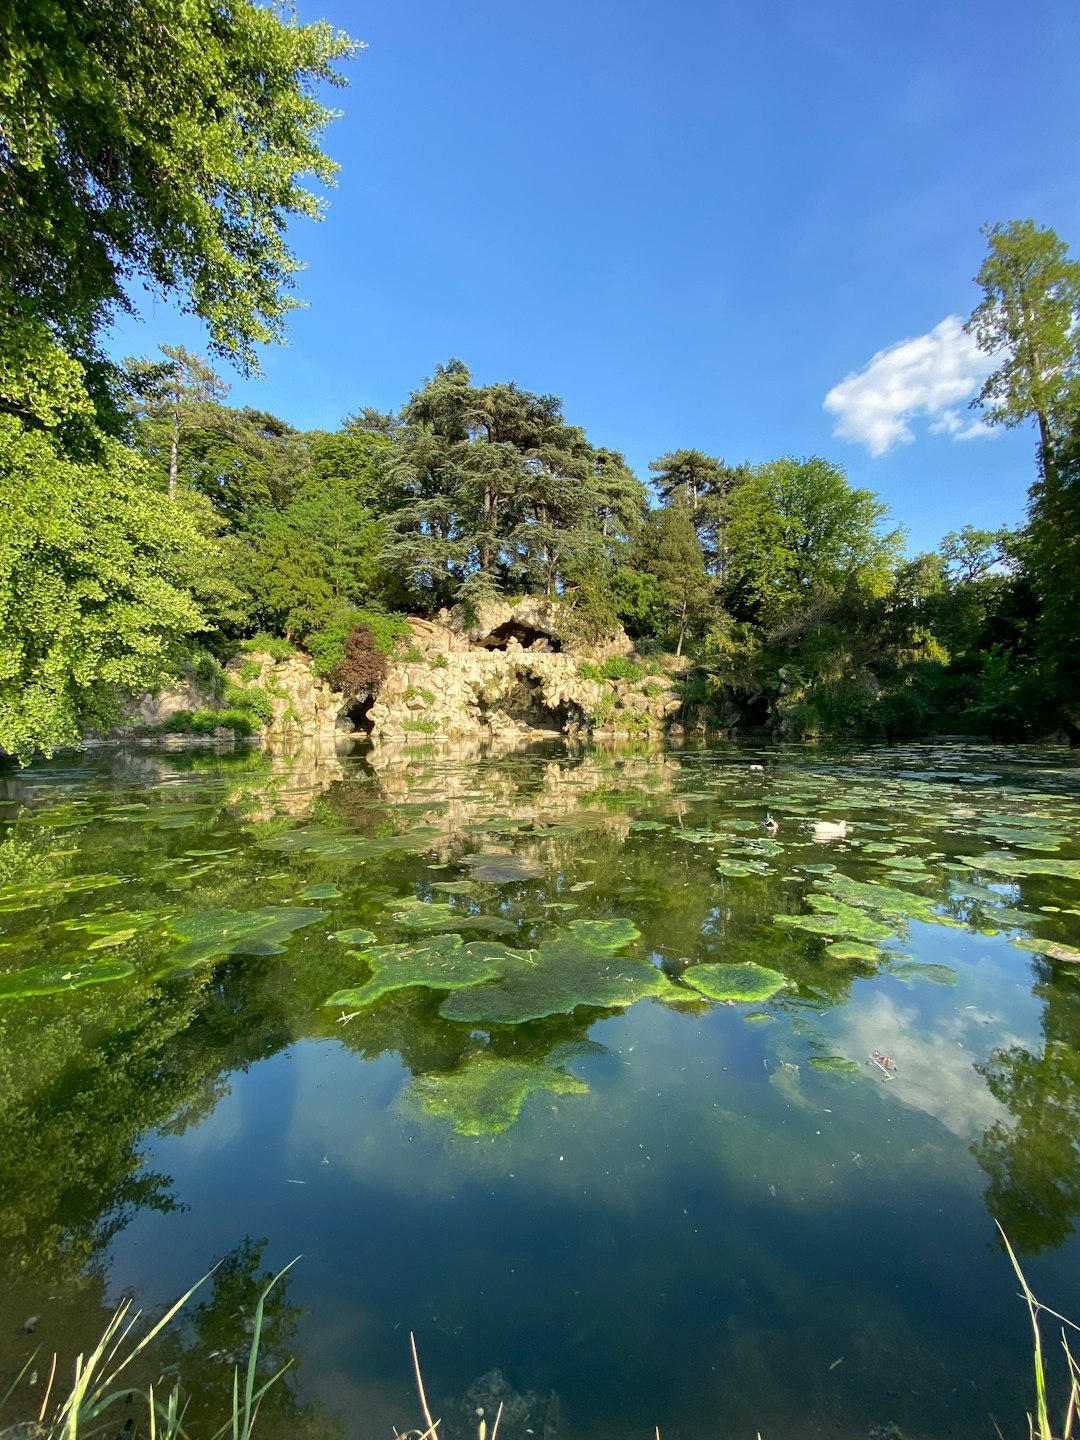 Nature reserve photo spot Bois de Boulogne Montigny-le-Bretonneux